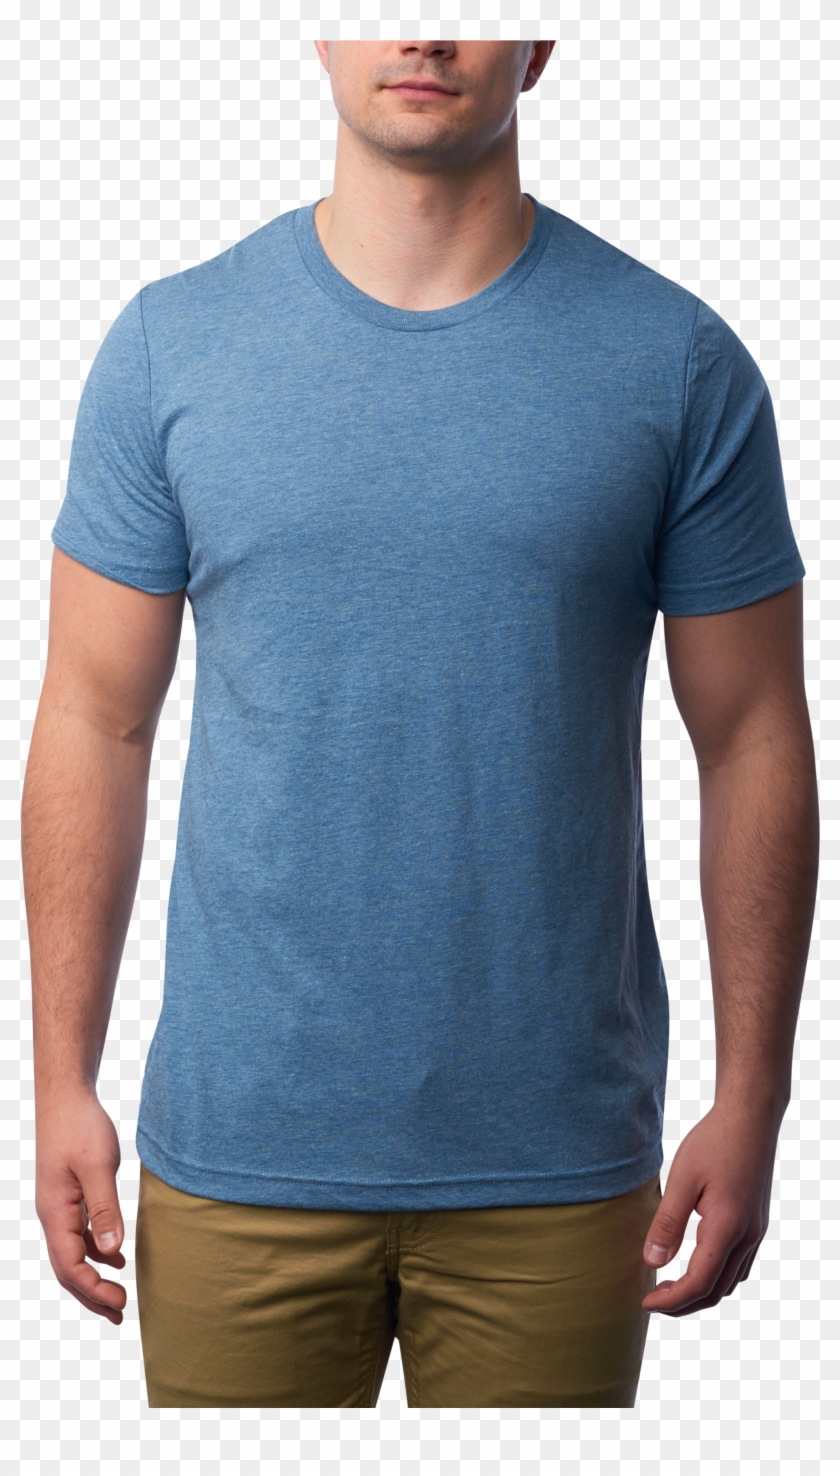 Tri Blend T Shirt - Man Clipart #3546045